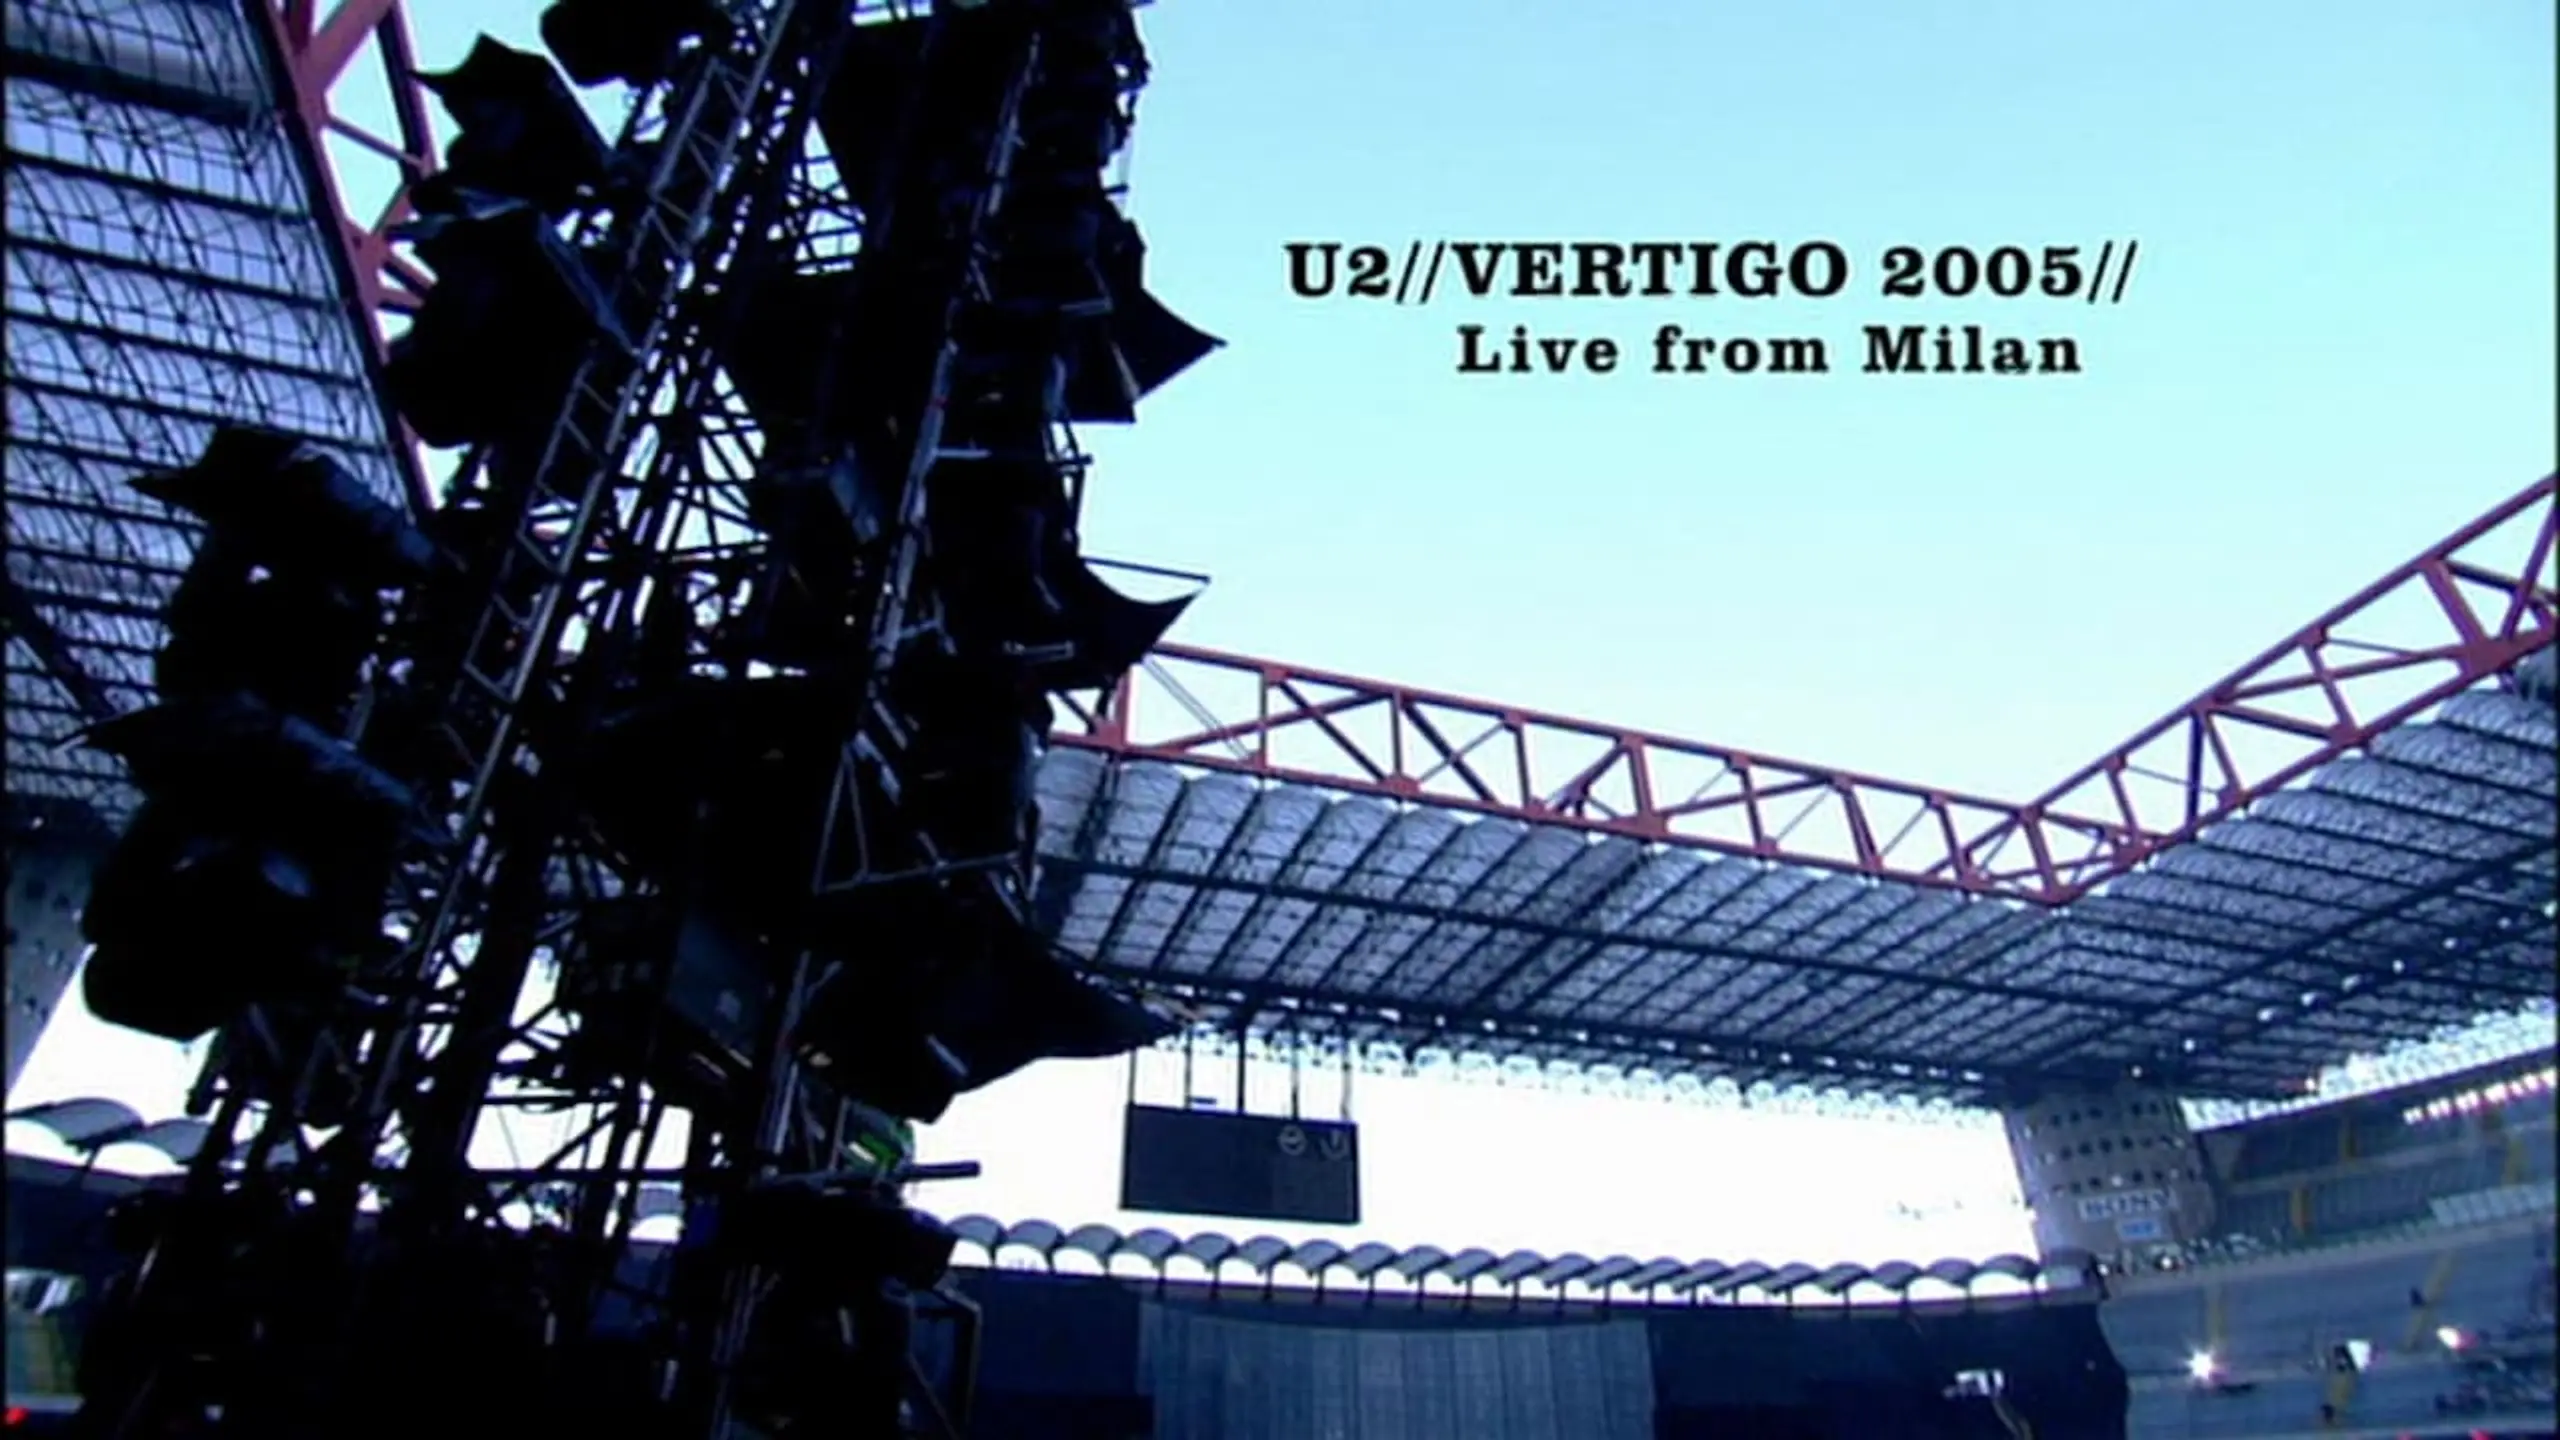 U2: Vertigo 05 - Live from Milan